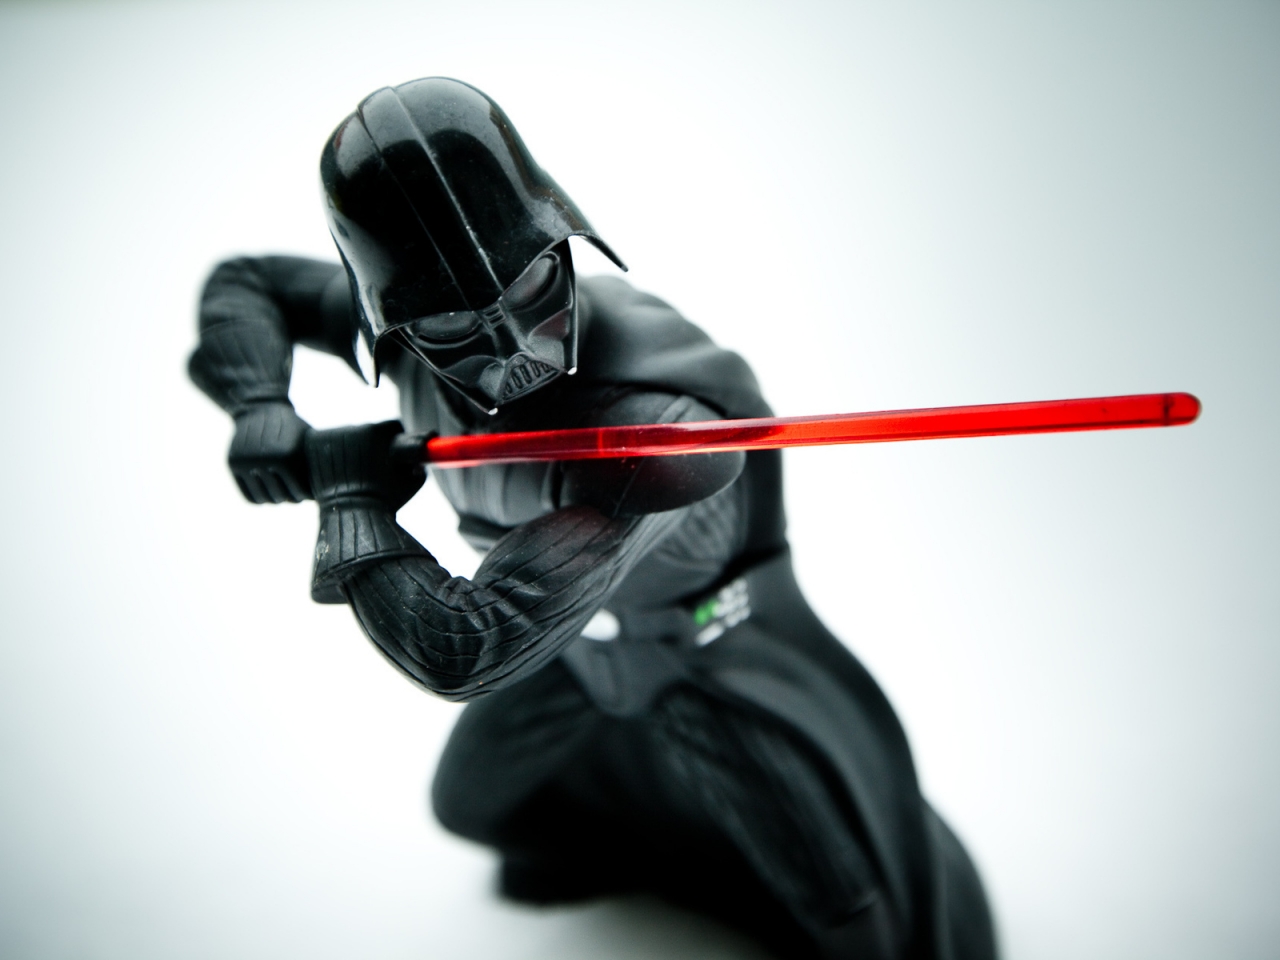 Star Wars Darth Vader for 1280 x 960 resolution